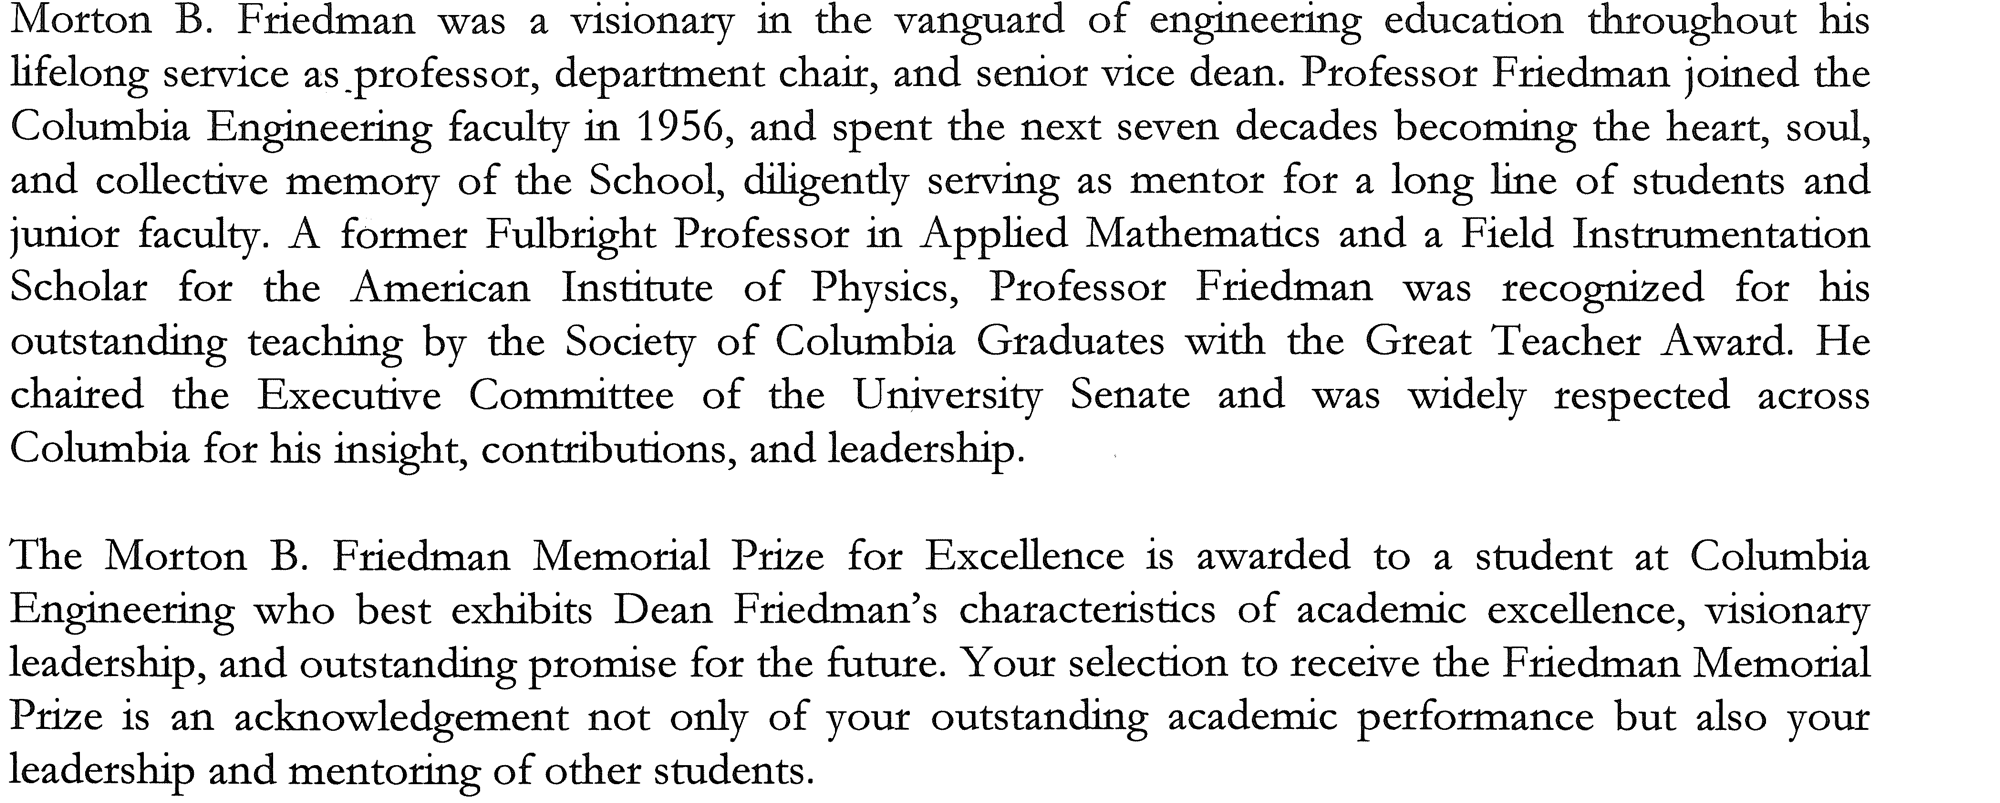 M. B. Friedman Prize description